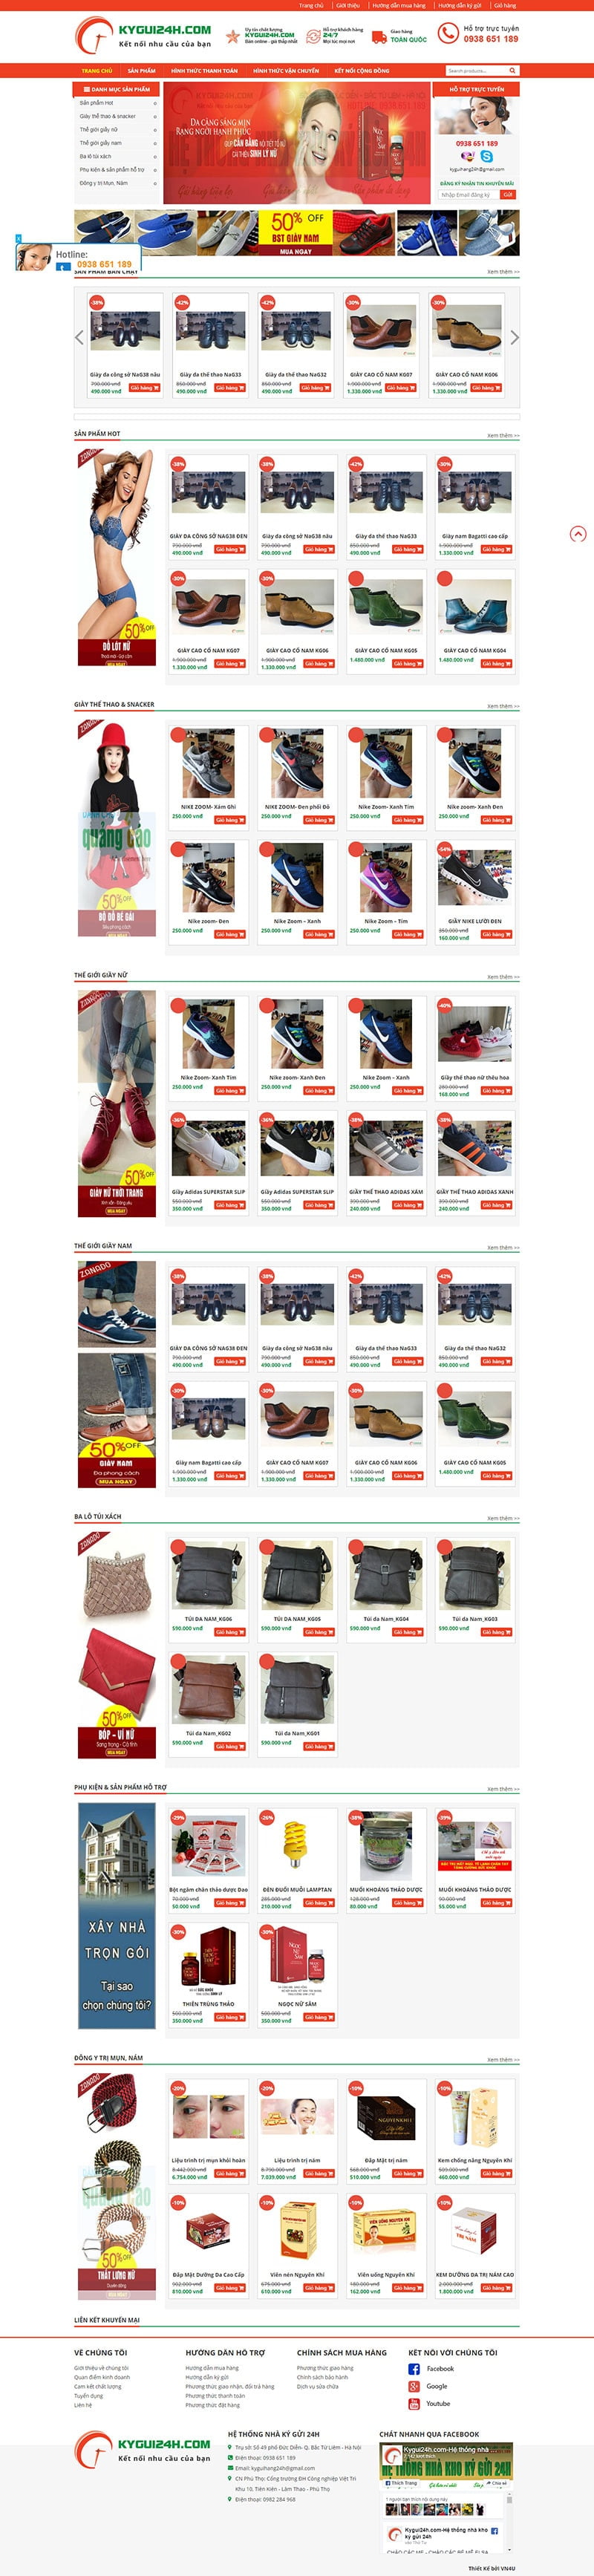 Mẫu web site bán hàng đa dụng giầy,túi,sản phẩm